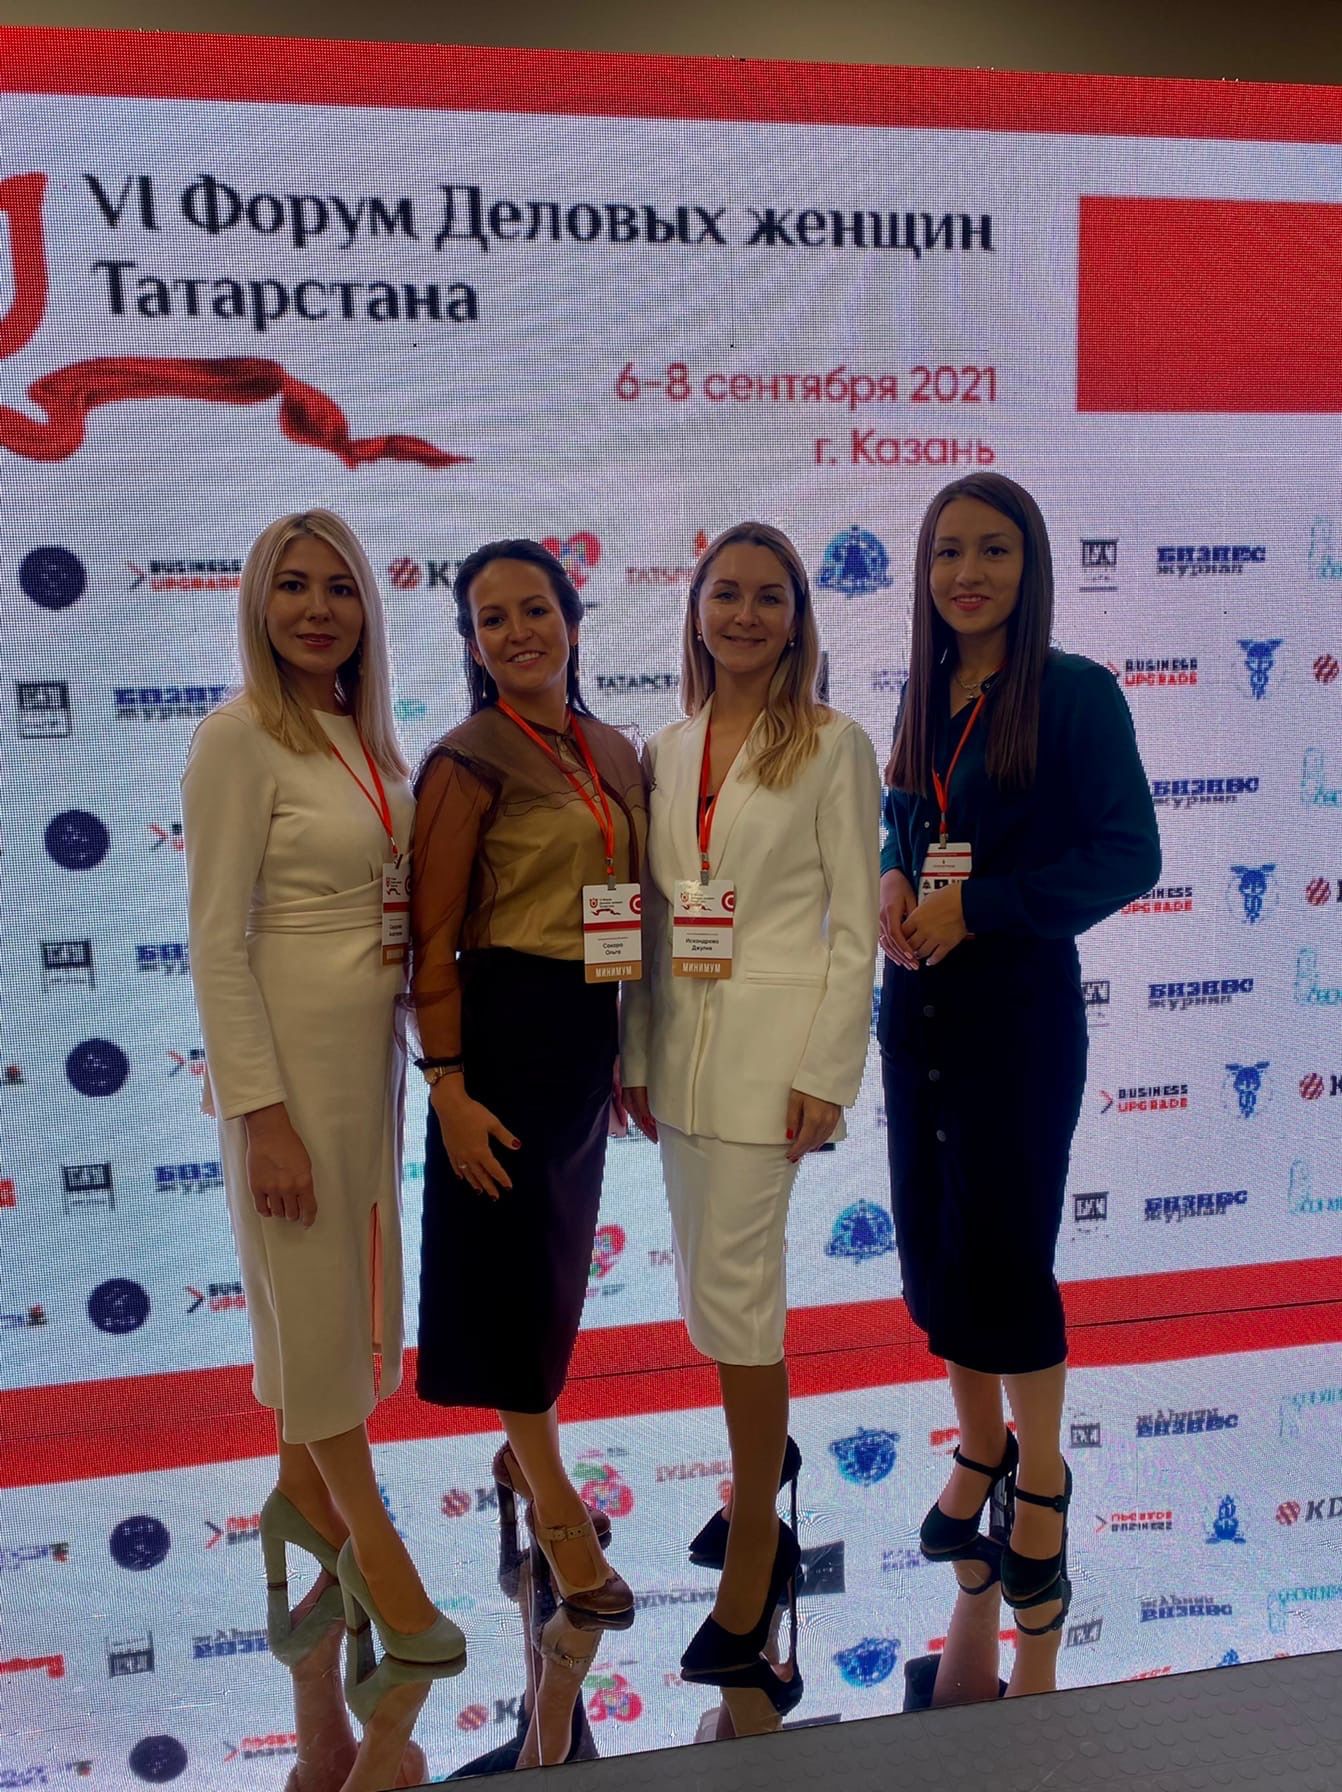 В Казани проходит шестой форум «Деловые женщины Татарстана»